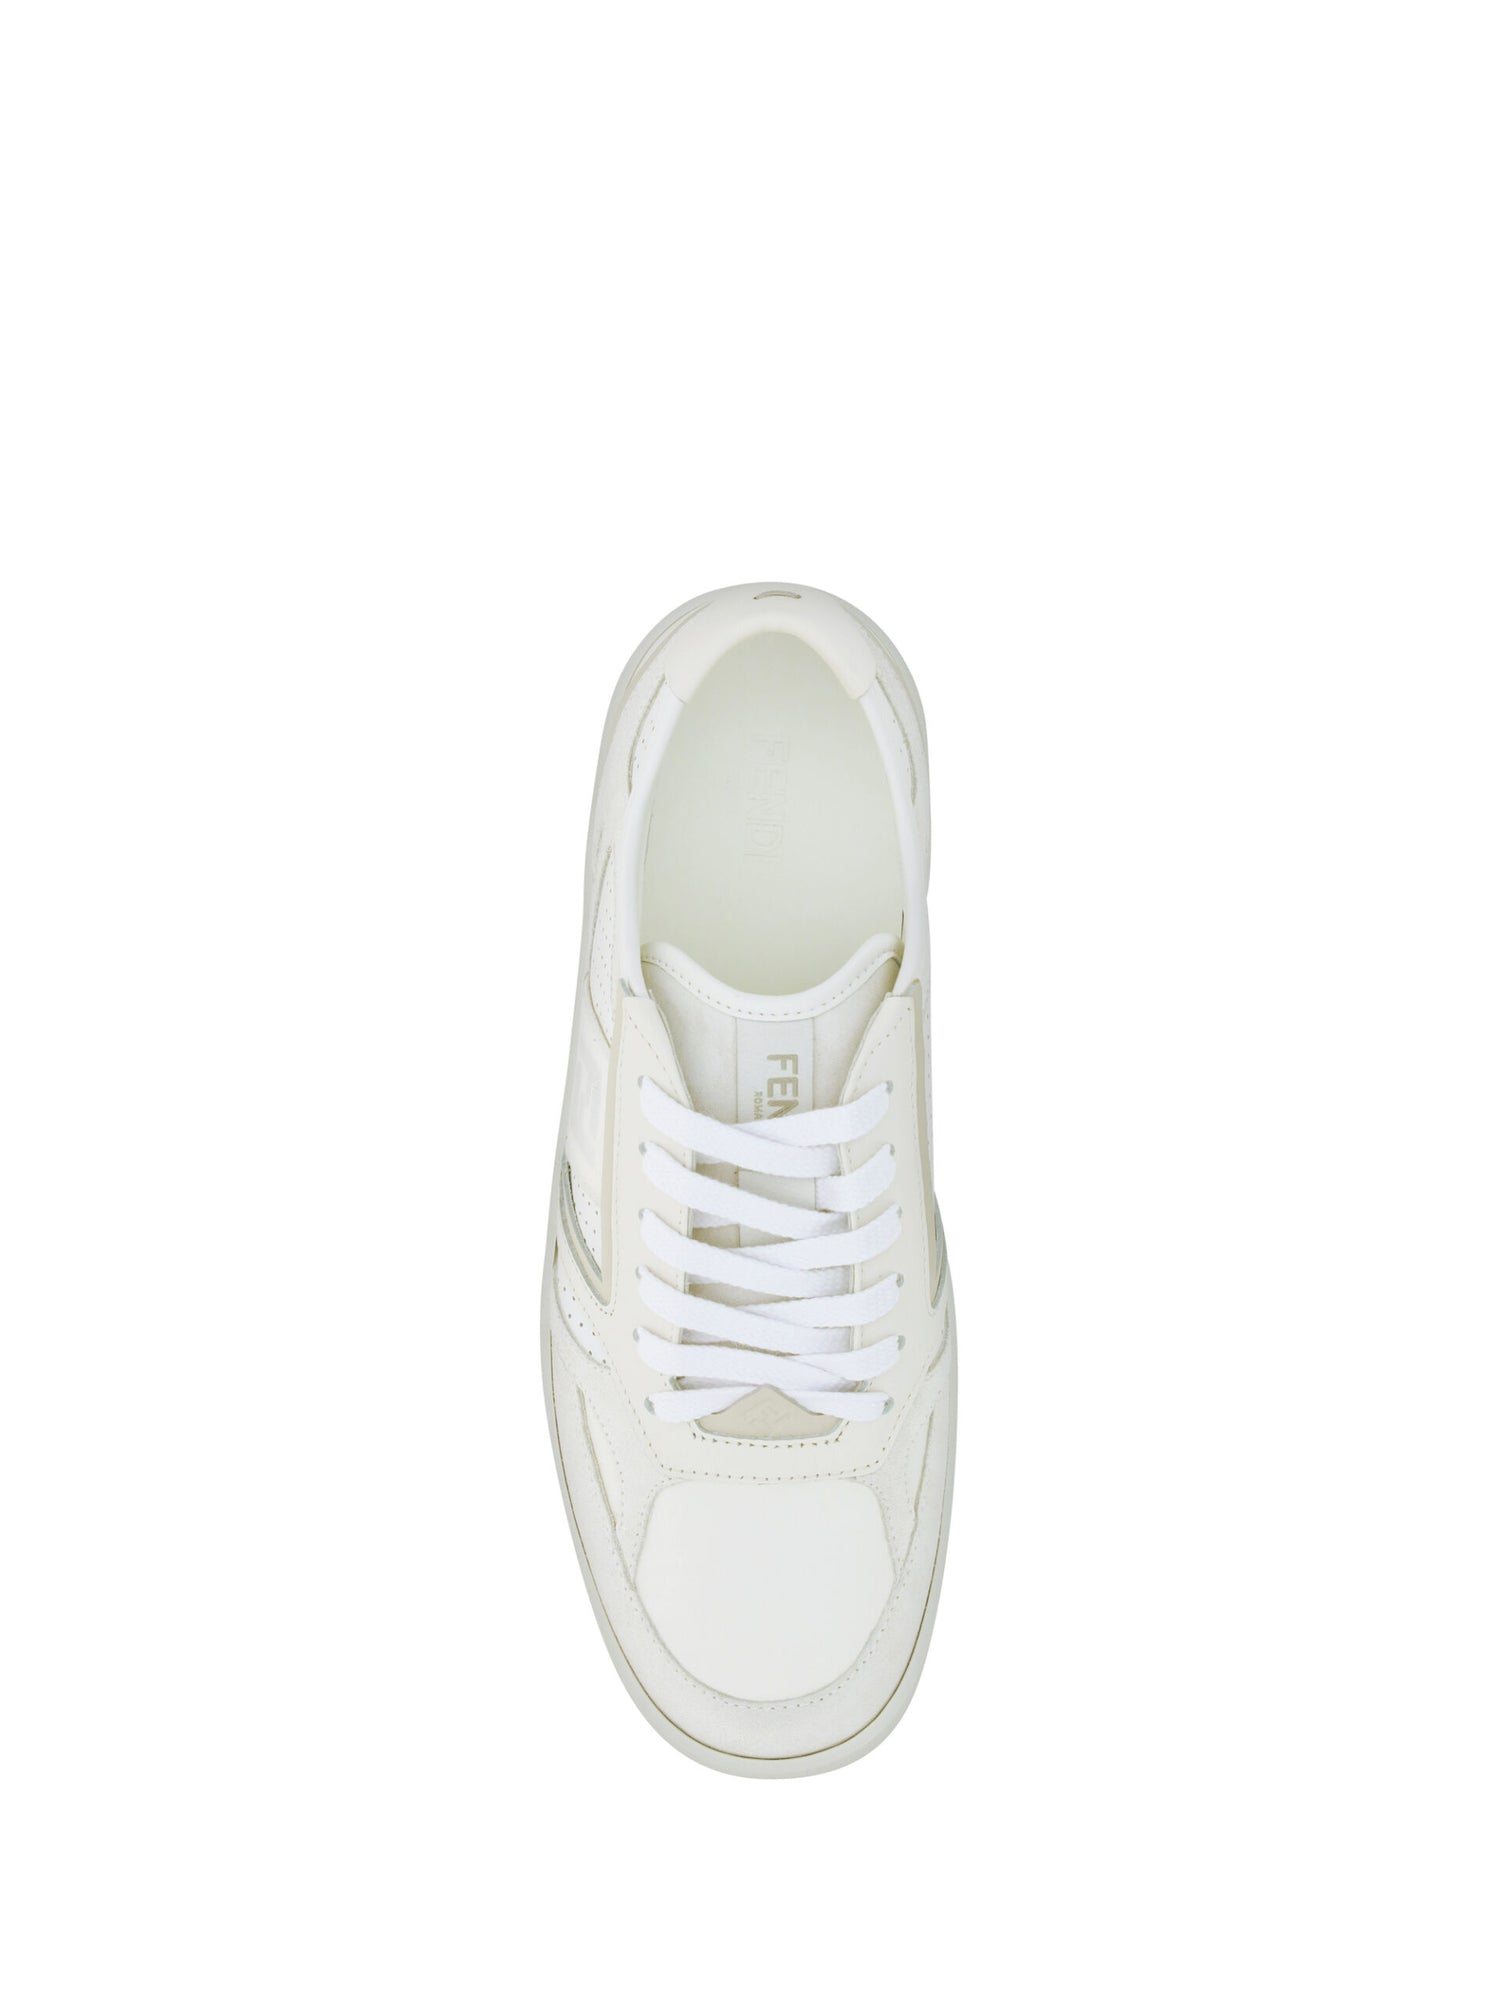 Fendi White Calf Leather Low Top Sneakers - DEA STILOSA MILANO